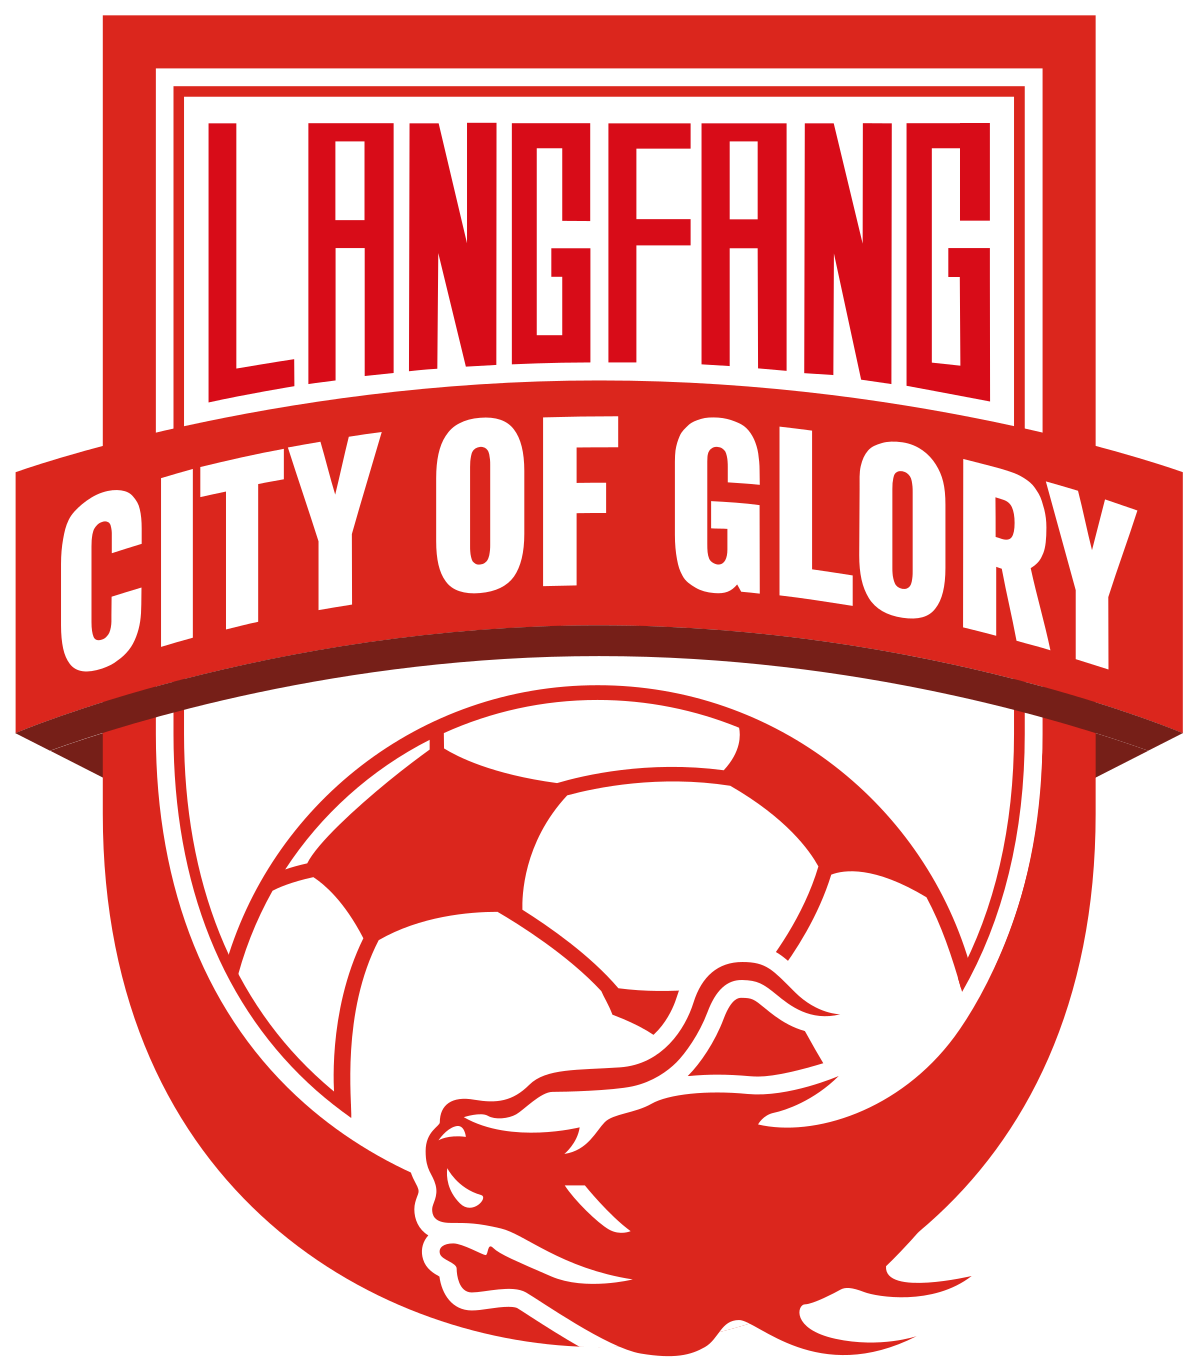 Langfang Glory City logo